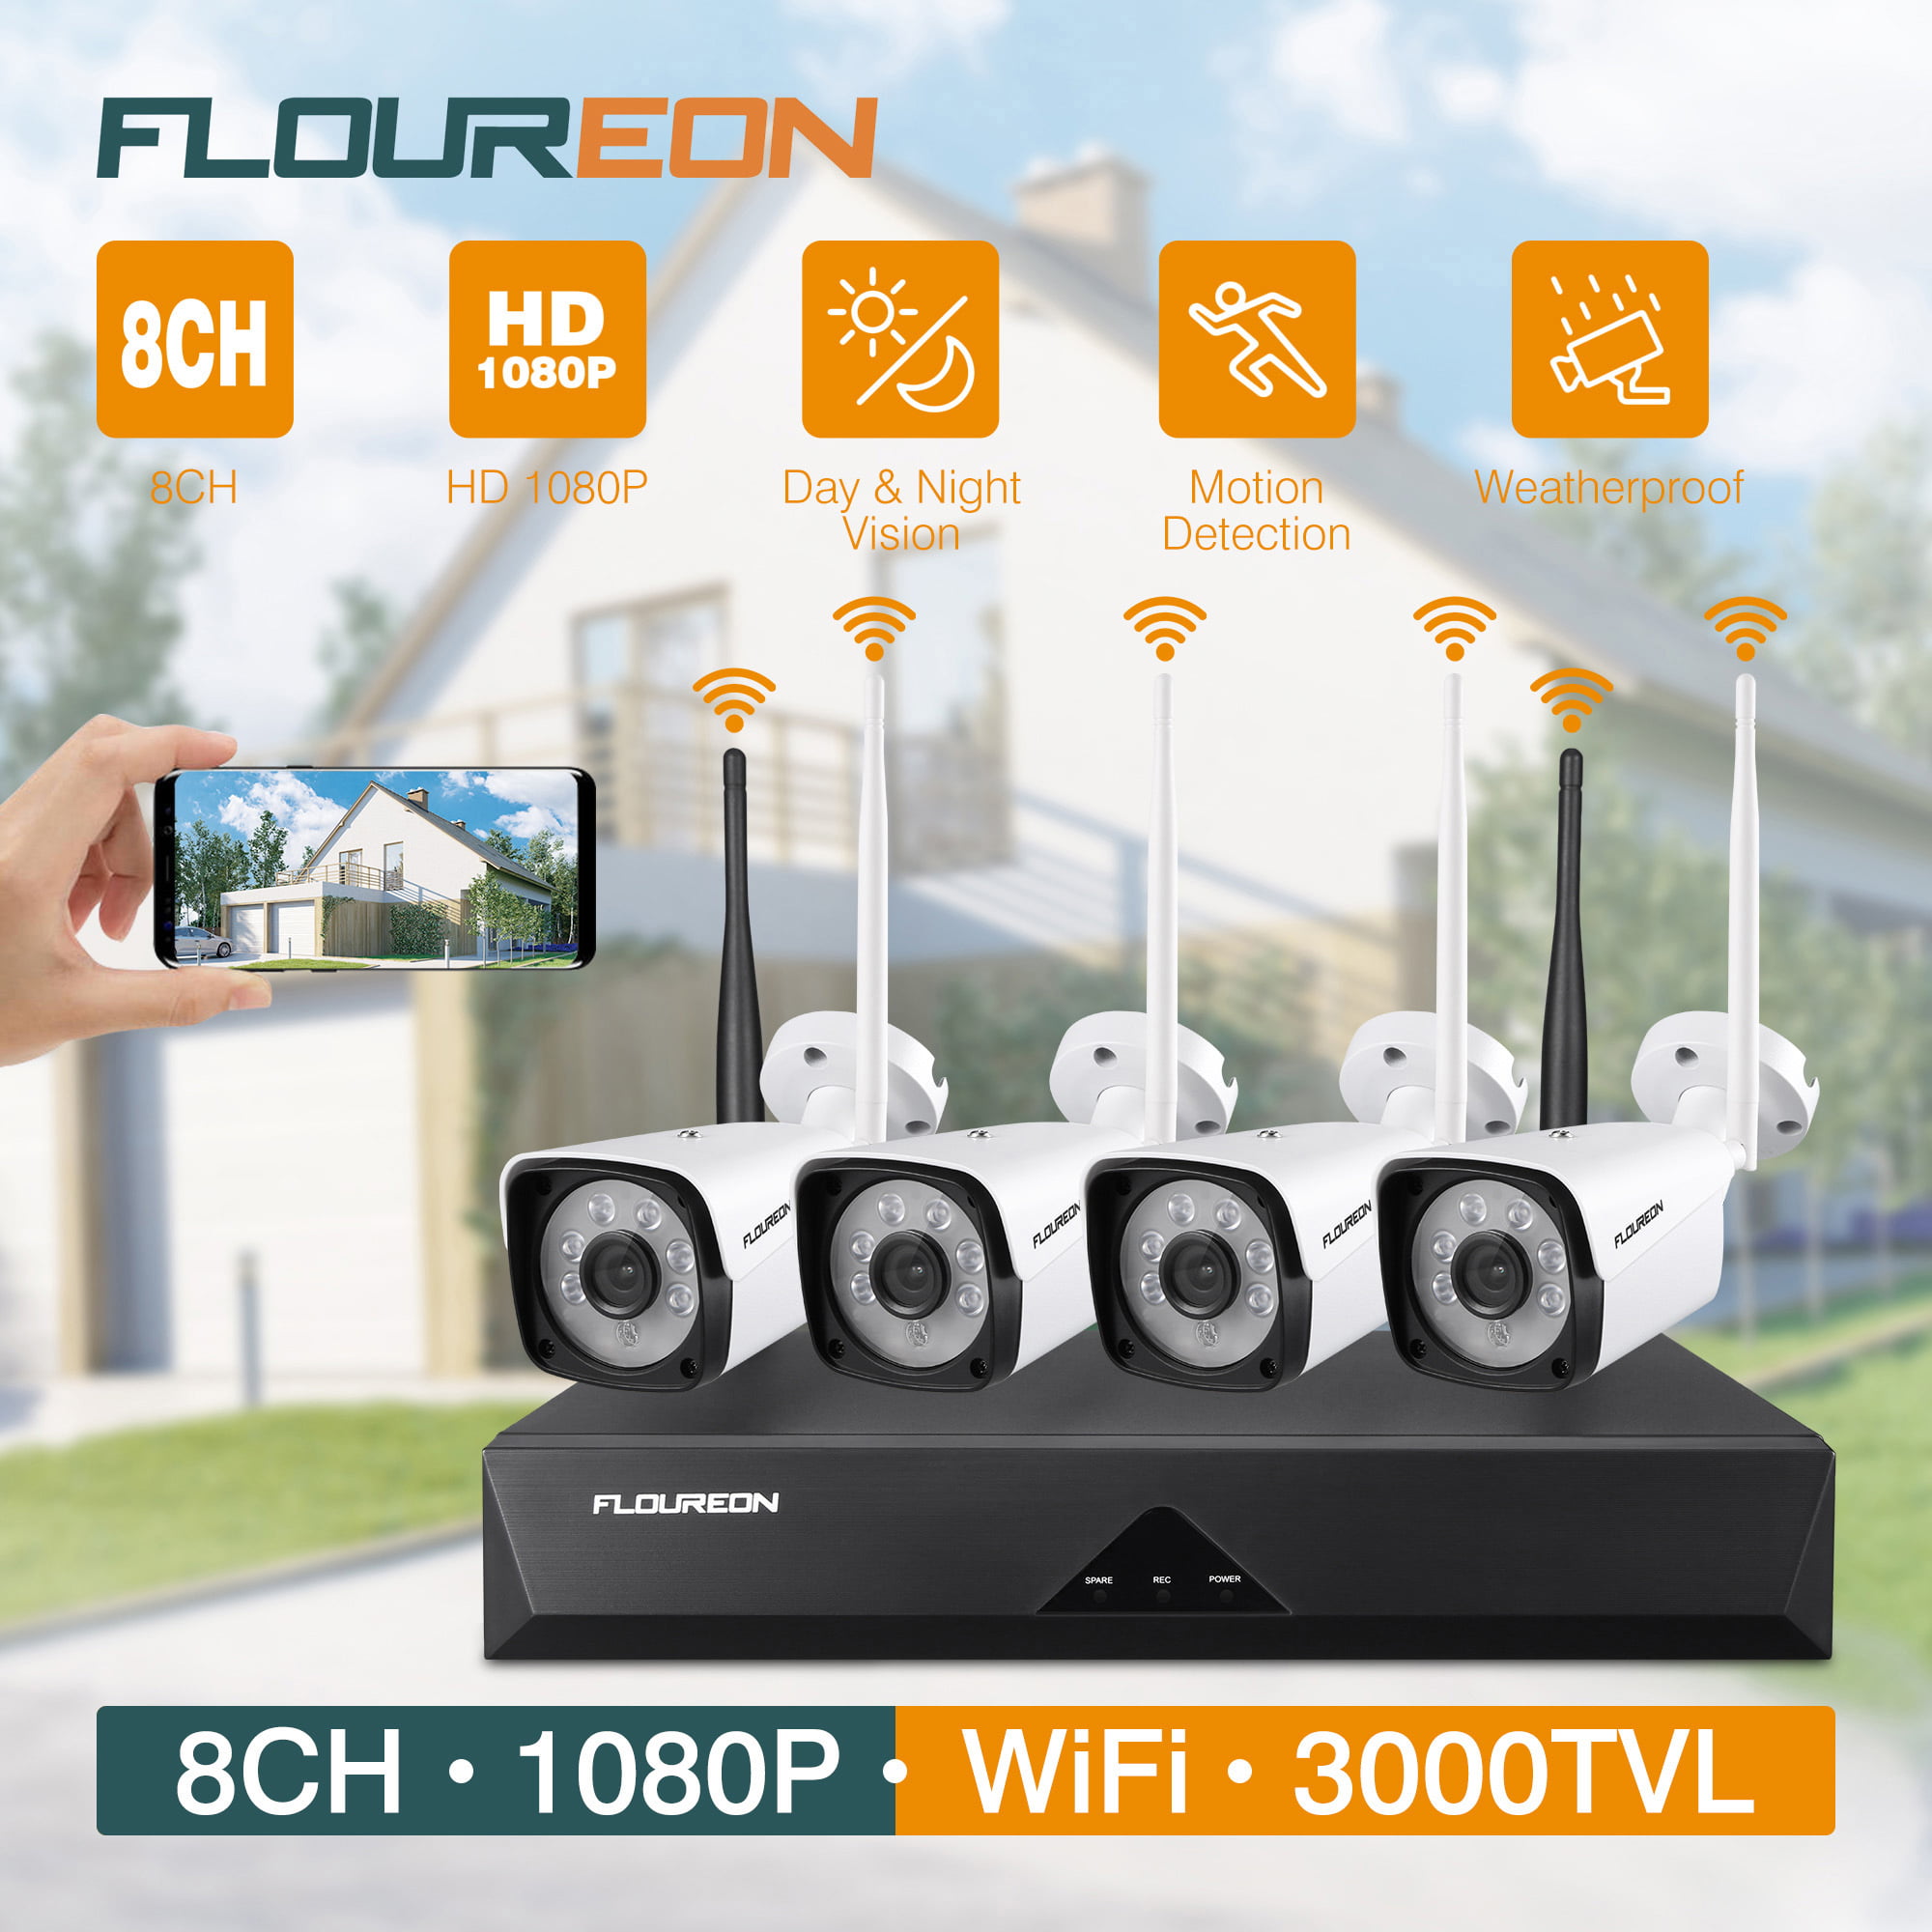 Floureon 8CH 1080P HD Überwachungskamera NVR DVR Set 4 Außen WiFi Funk IP Kamera 